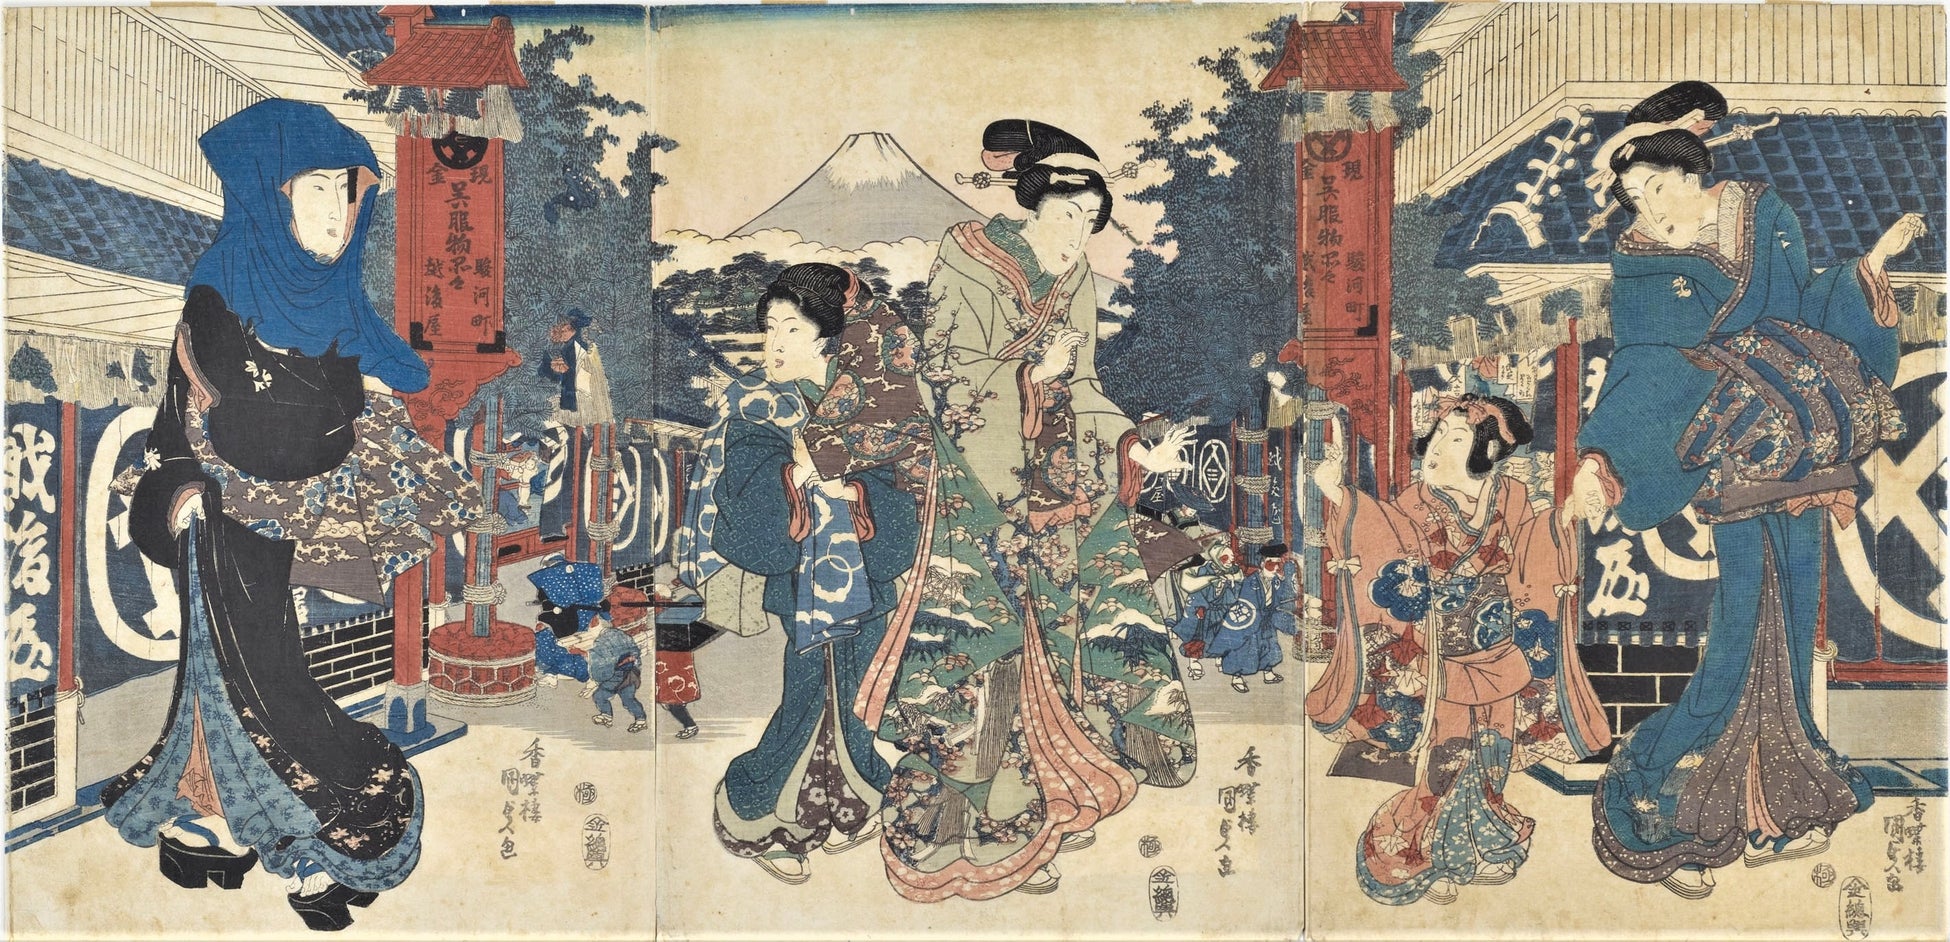 作品名 越後屋前の三美人 歌川 国貞作（1830〜44年）提供 (株)三越伊勢丹ホールディングス